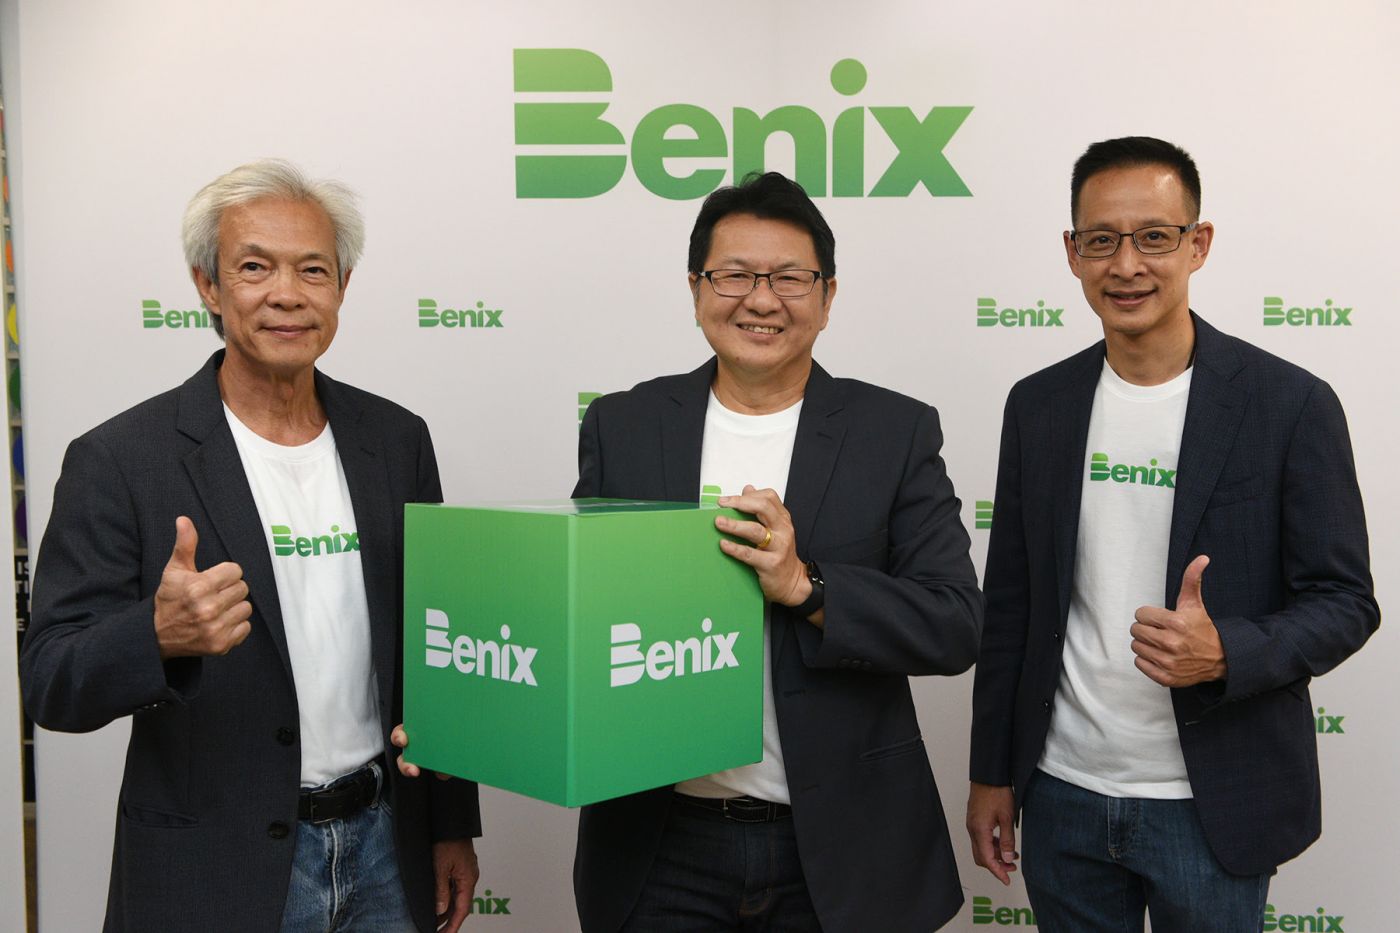 ครั้งแรกในไทย! เปิดตัว Benix โบรกเกอร์แนวใหม่ยุคดิจิทัล ด้วยโซลูชั่นที่ตอบโจทย์ Employee Benefits และ Wellness แบบครบวงจร จากความร่วมมือของ Humanica – Fuchsia Venture Capital – CXA Group